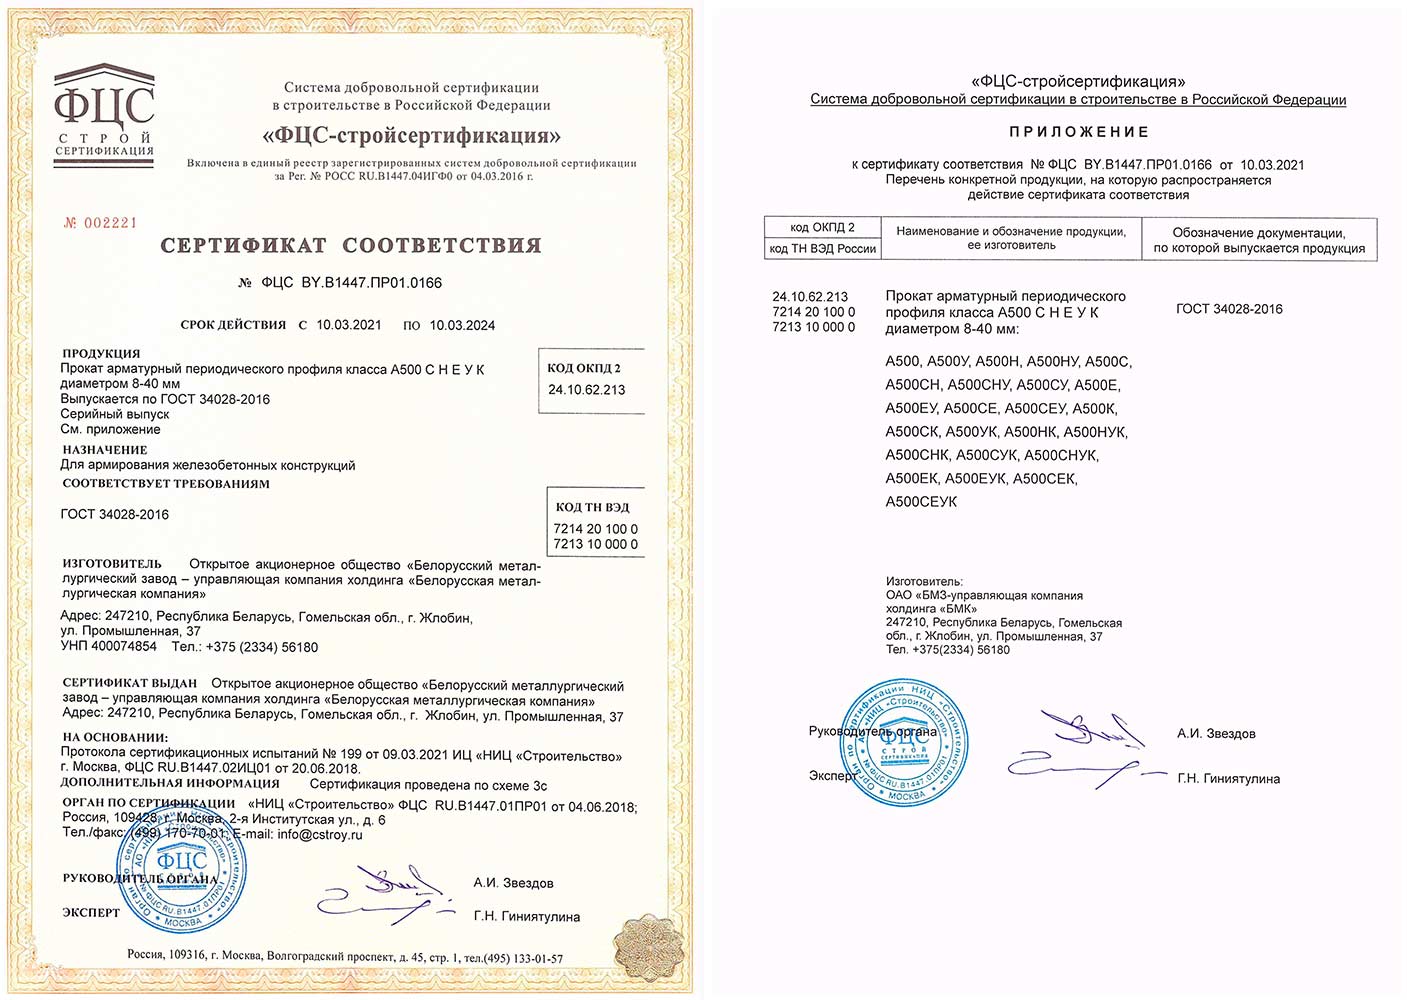 Сертификат № ФЦС BY.B1447.ПР01.0166 на производство арматурного проката периодического профиля класса А500 С Н Е У К  Ø 8-40 мм по требованиям ГОСТ 34028-2016